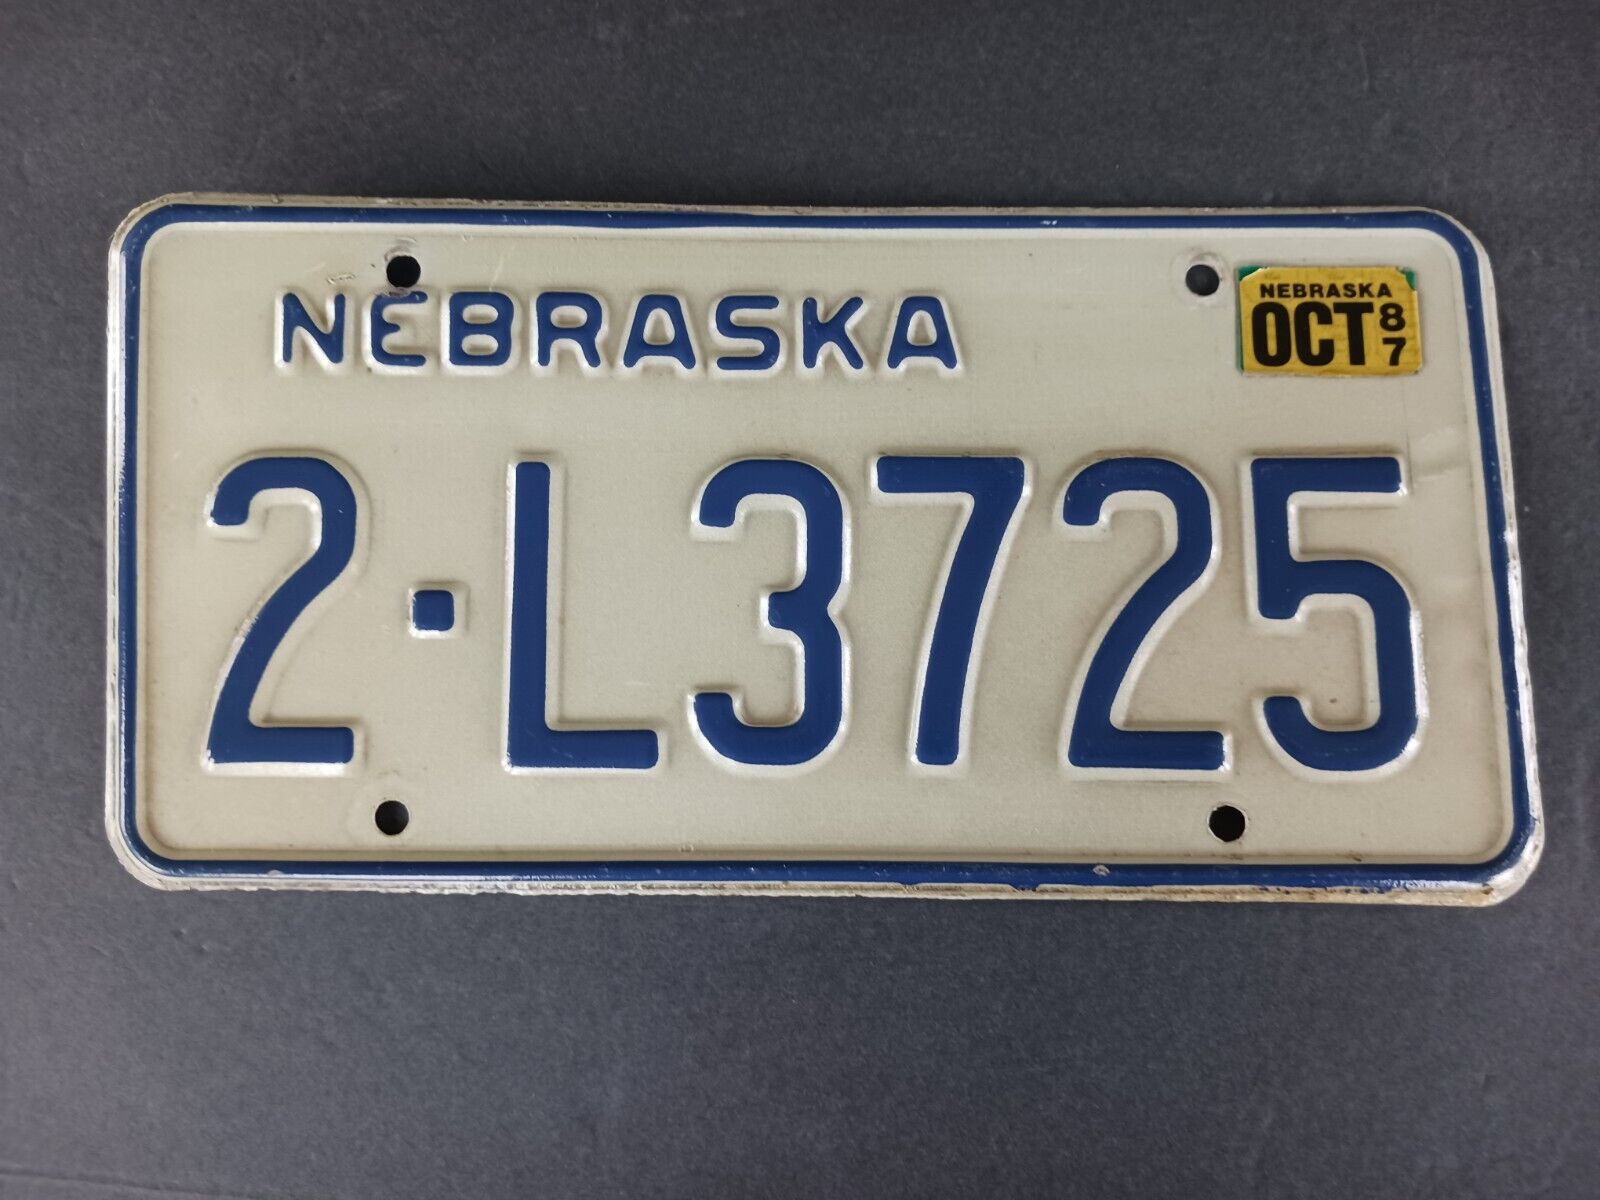 1987 Nebraska License Plate 2 - L3725